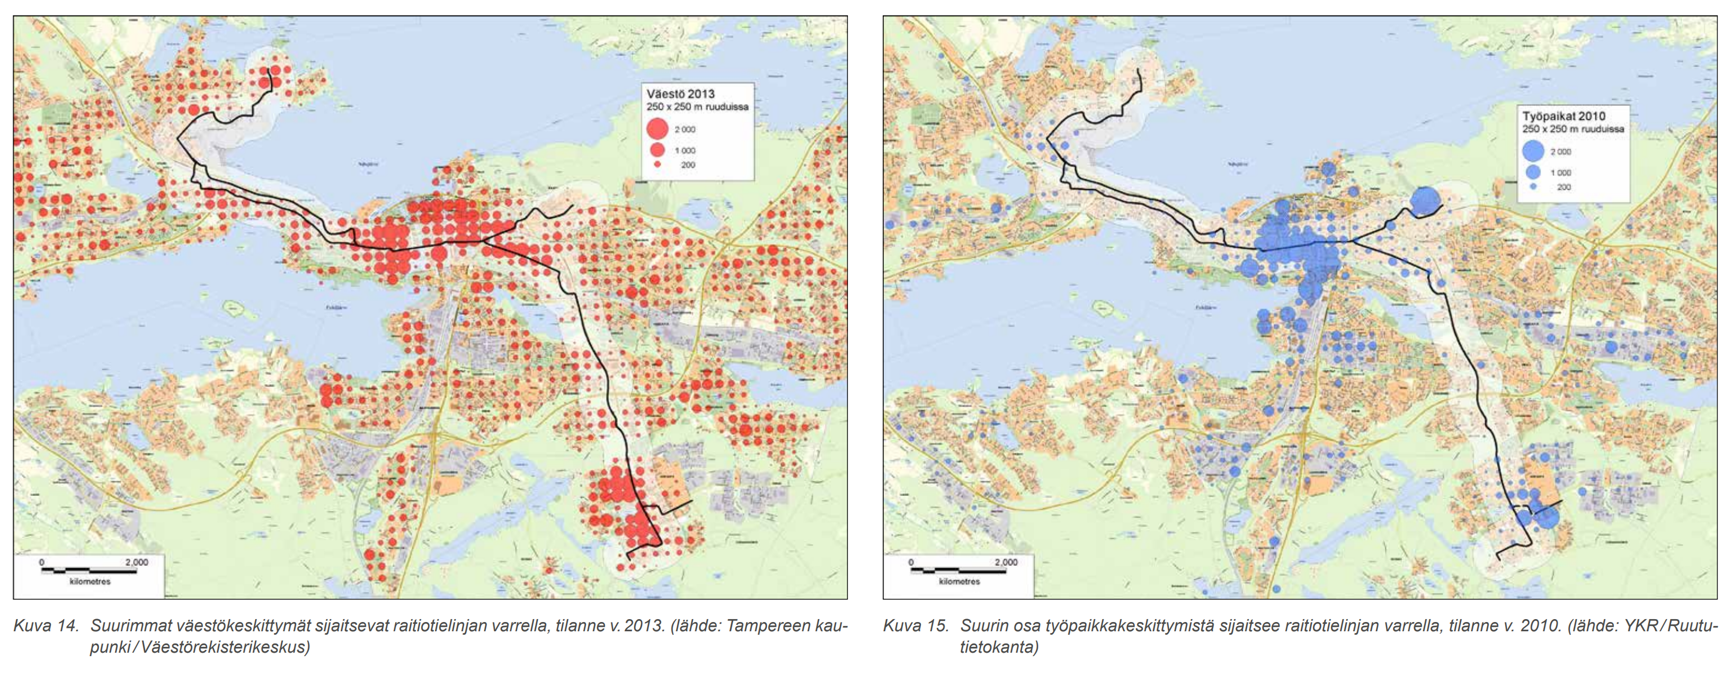 Плотность населения и рабочих мест в Тампере по квадратам 250x250 м, на фоне предлагаемых трамвайных линий (с двумя вариантами трассировки на западе), из предпроекта 2014 года